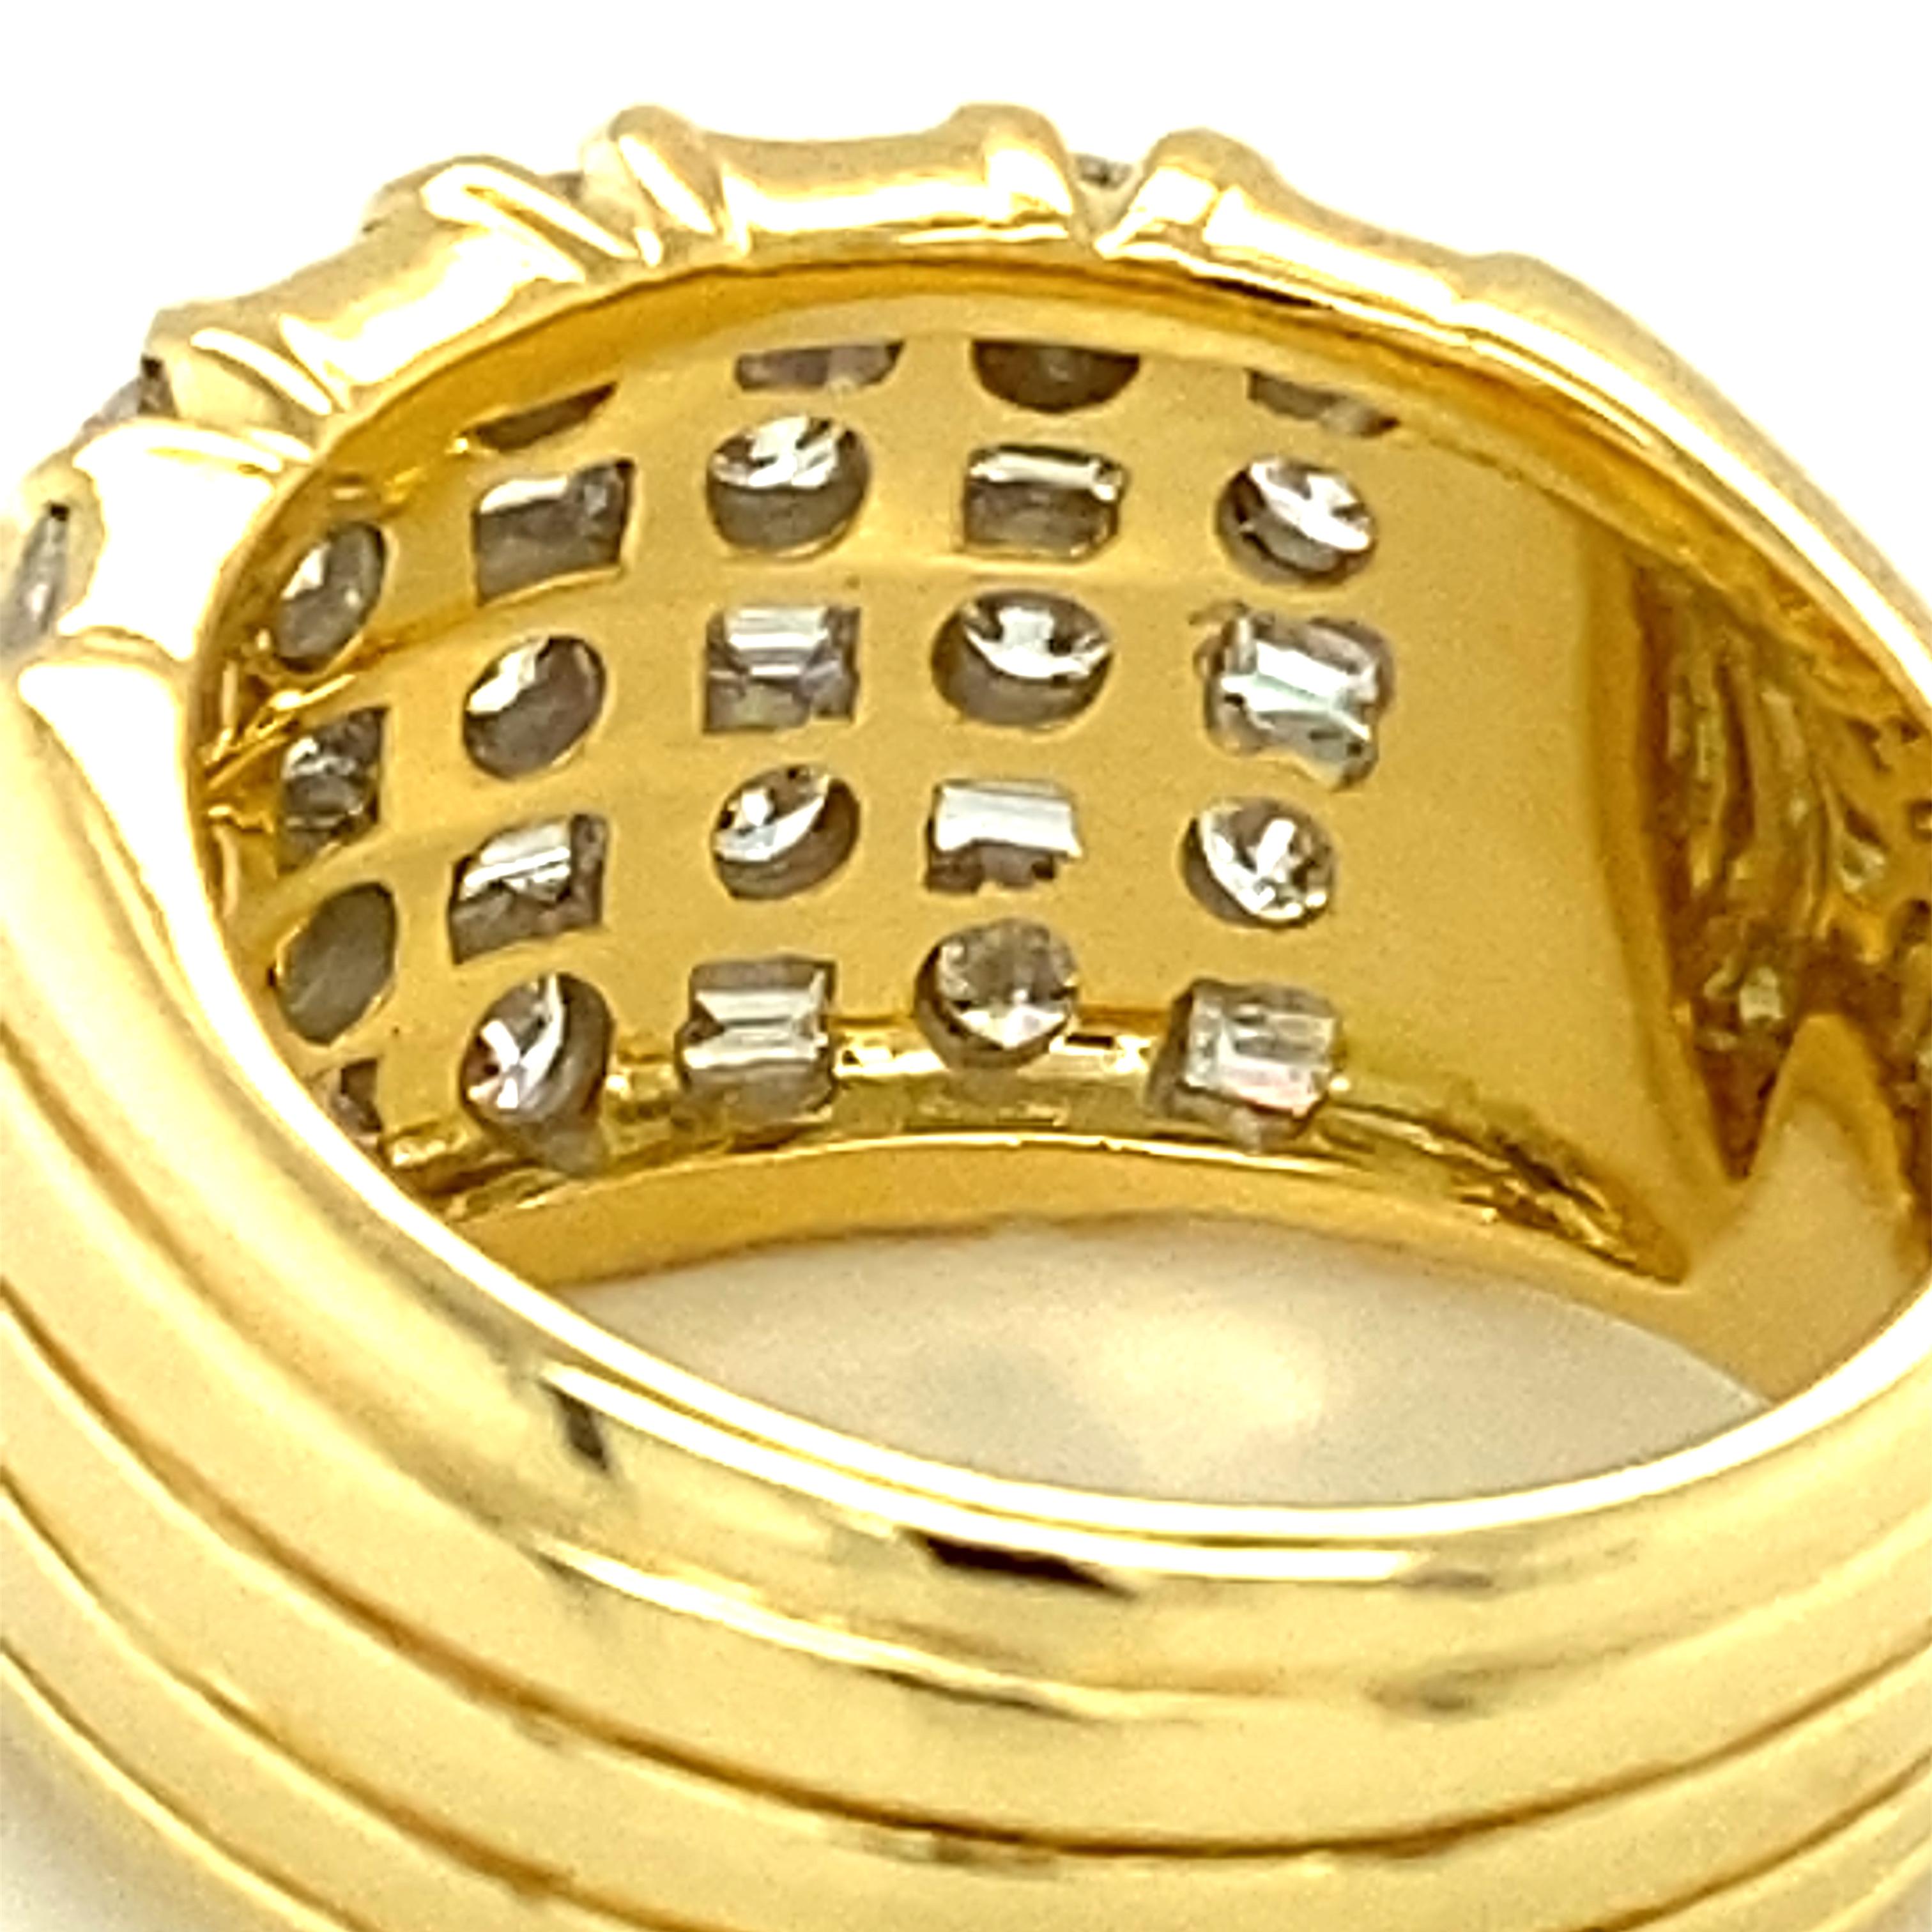 Sparkling Diamond Ring in 18 Karat Yellow Gold 5